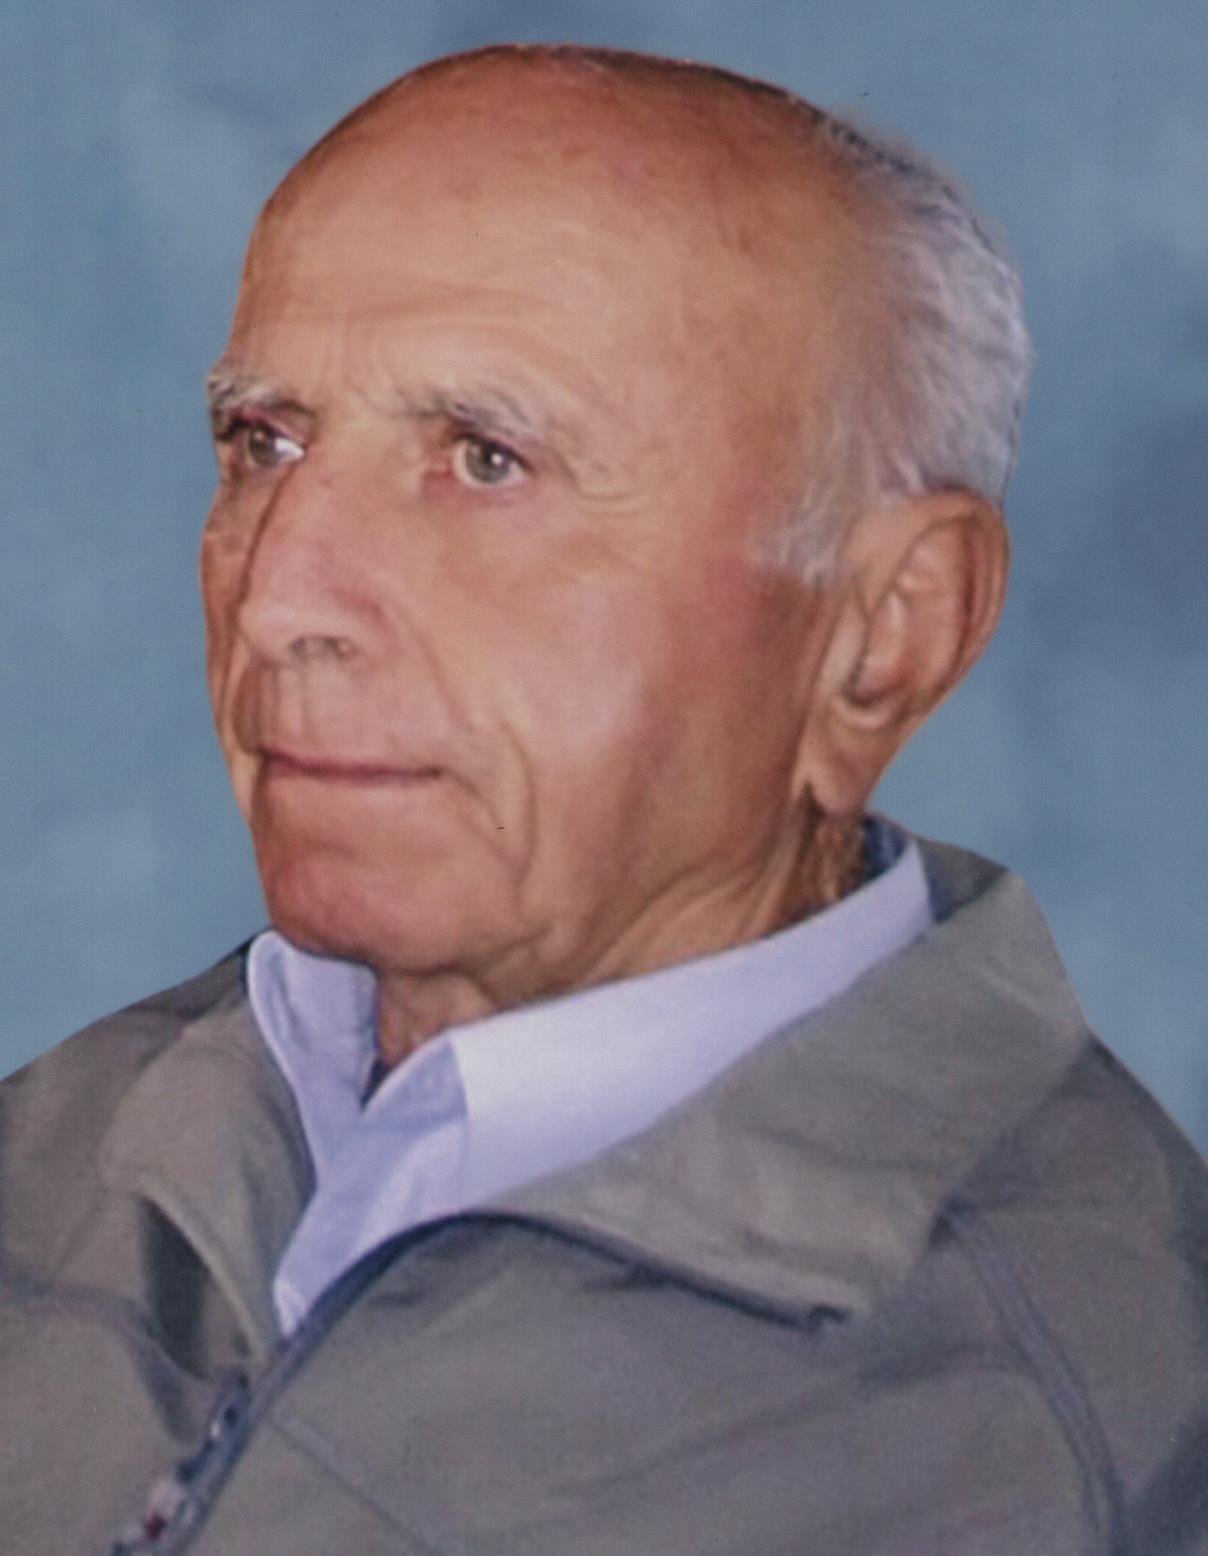 Έφυγε από την ζωή ο Νικόλαος Ζιώγας σε ηλικία 88 ετών – Η κηδεία θα τελεστεί την Τρίτη 7 Νοεμβρίου